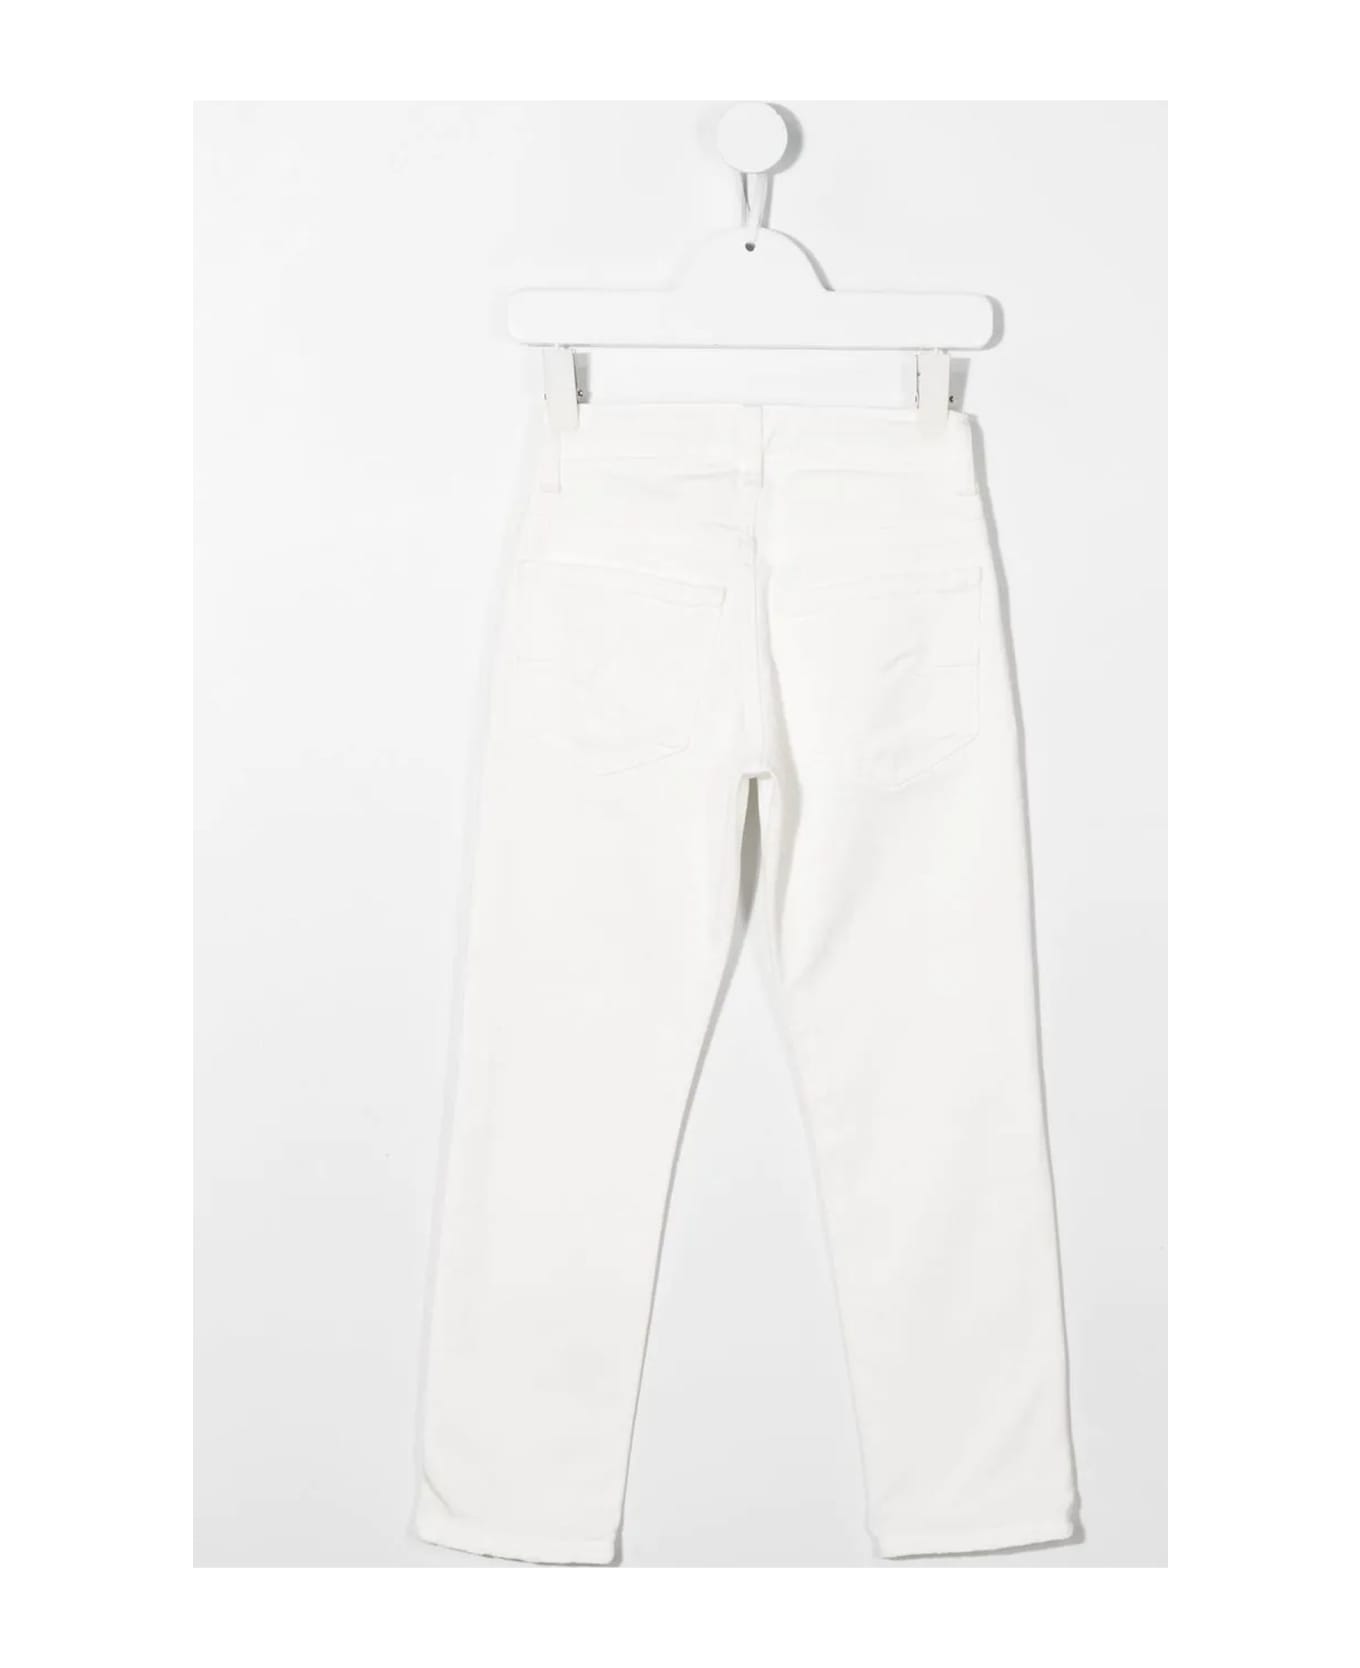 Paolo Pecora Trousers White - White